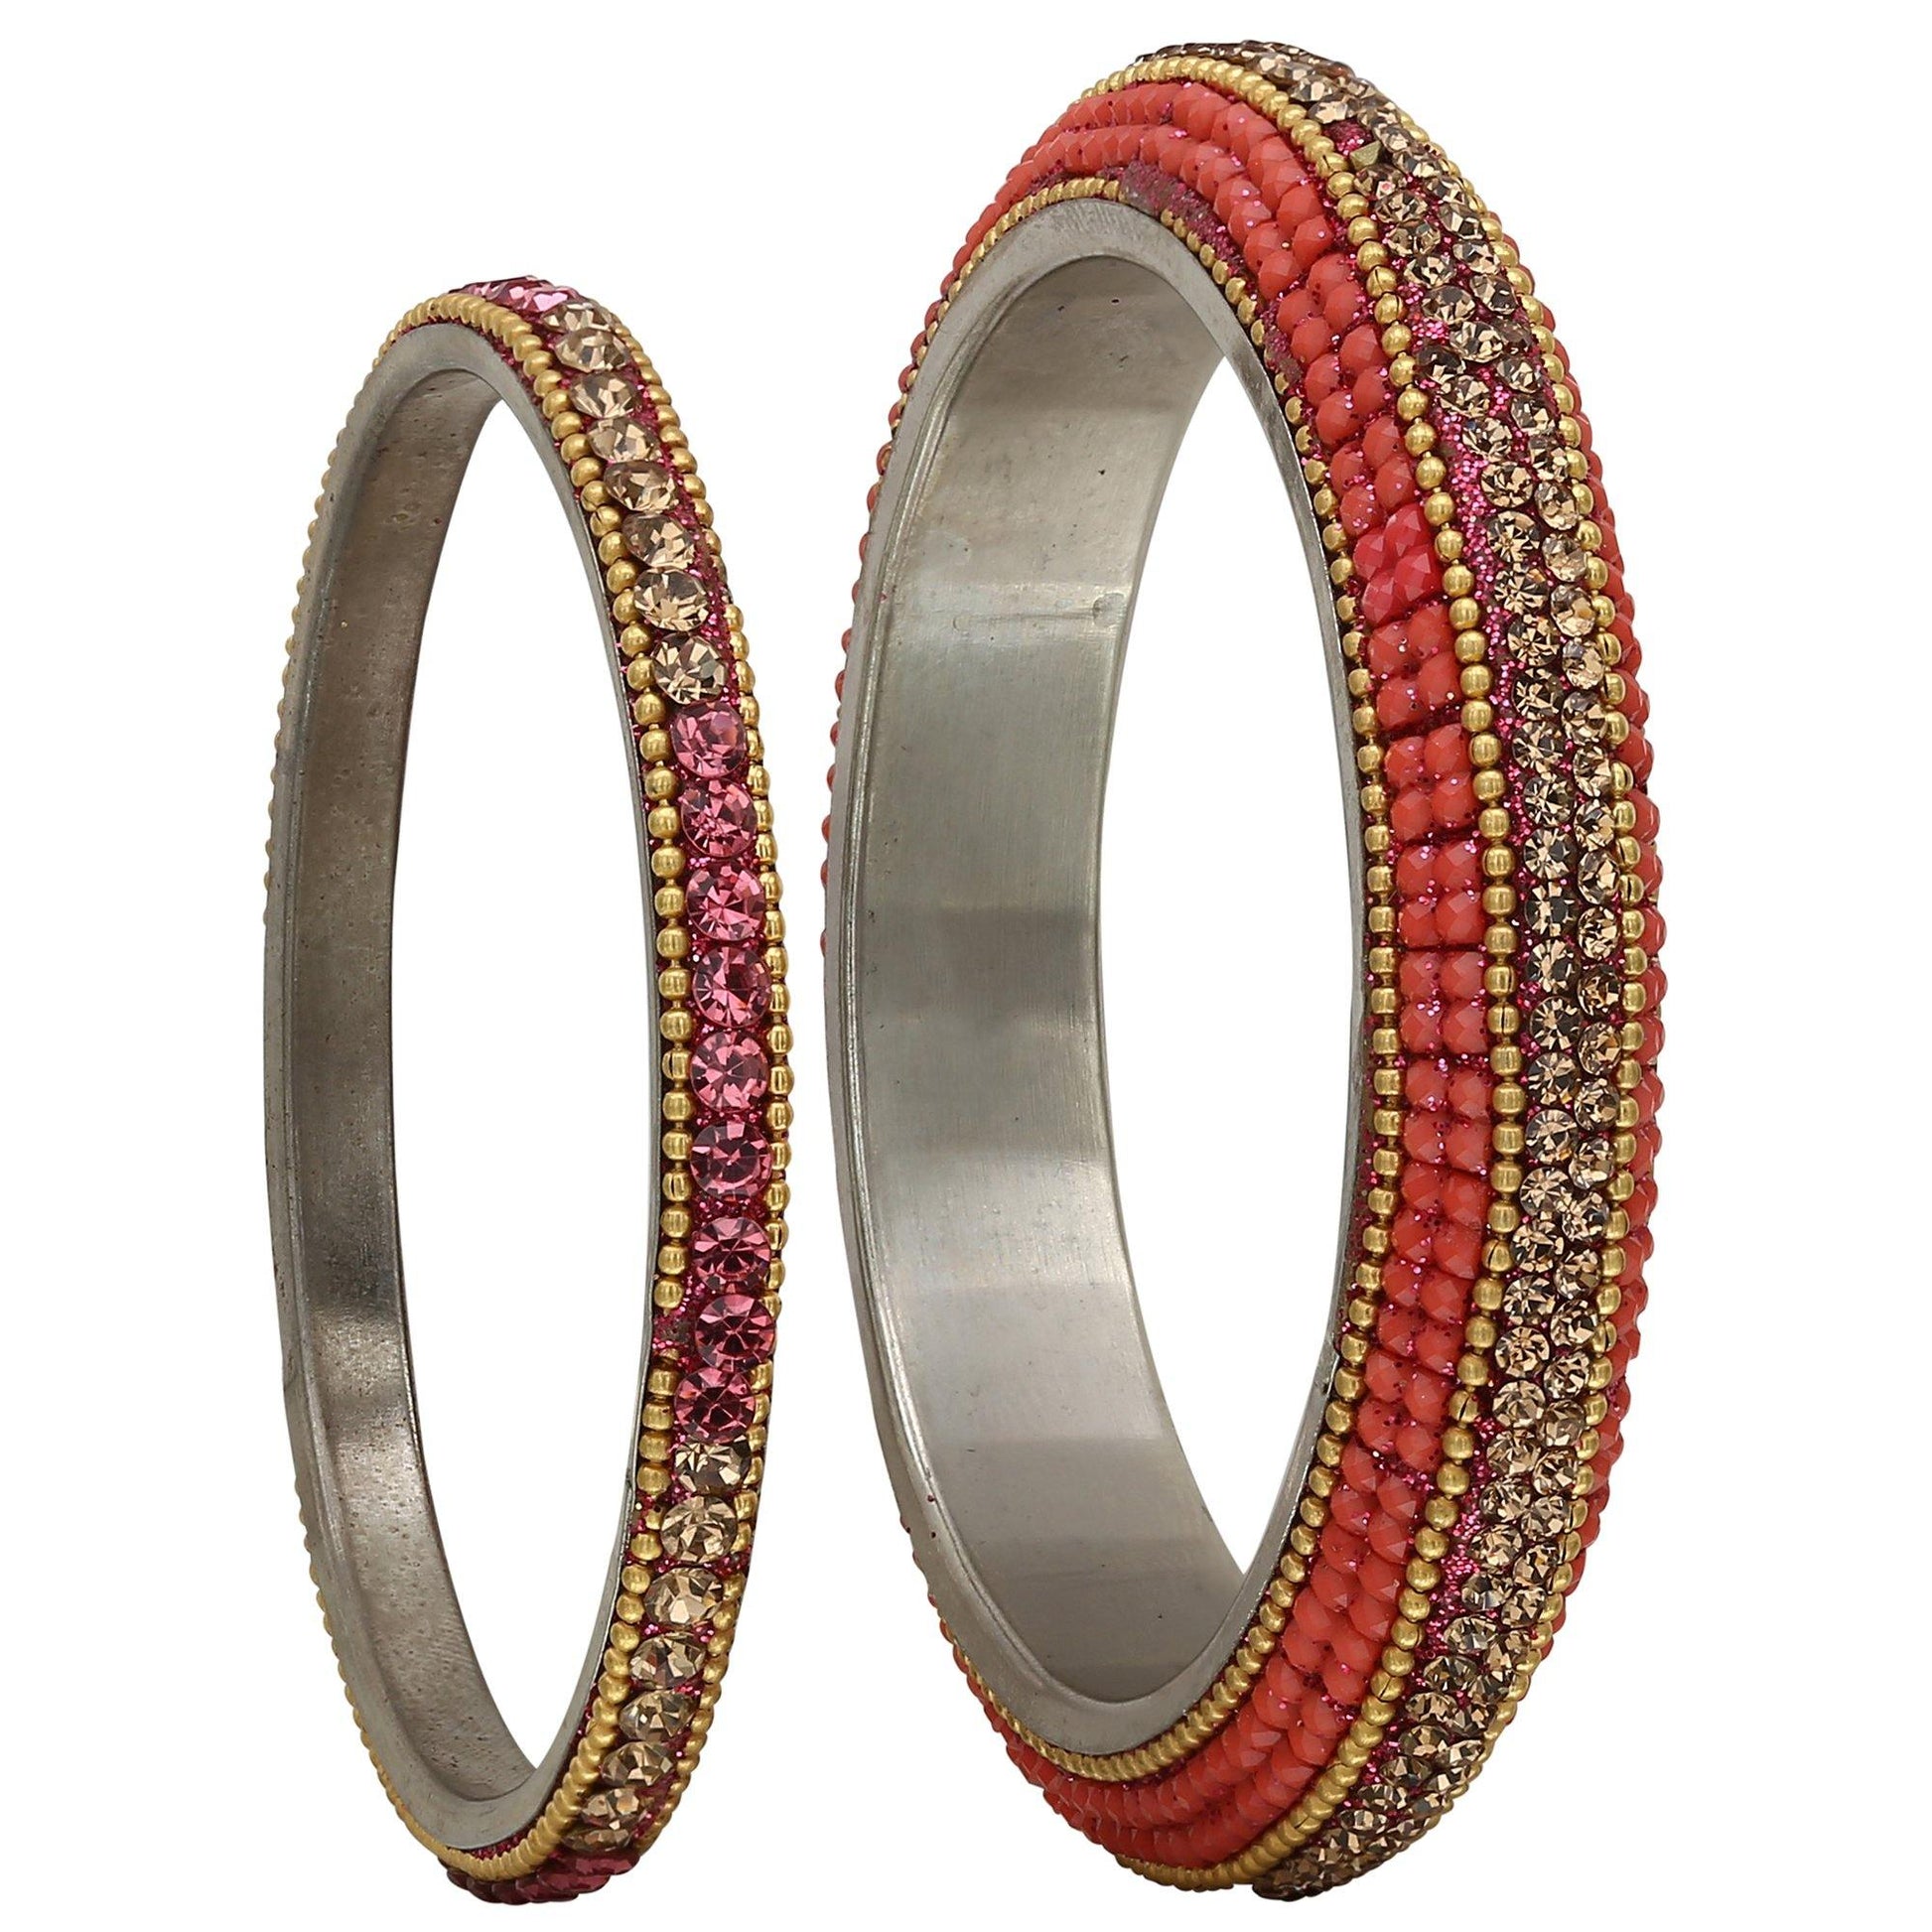 sukriti stylish beads brass bangle set for girls & women – set of 6